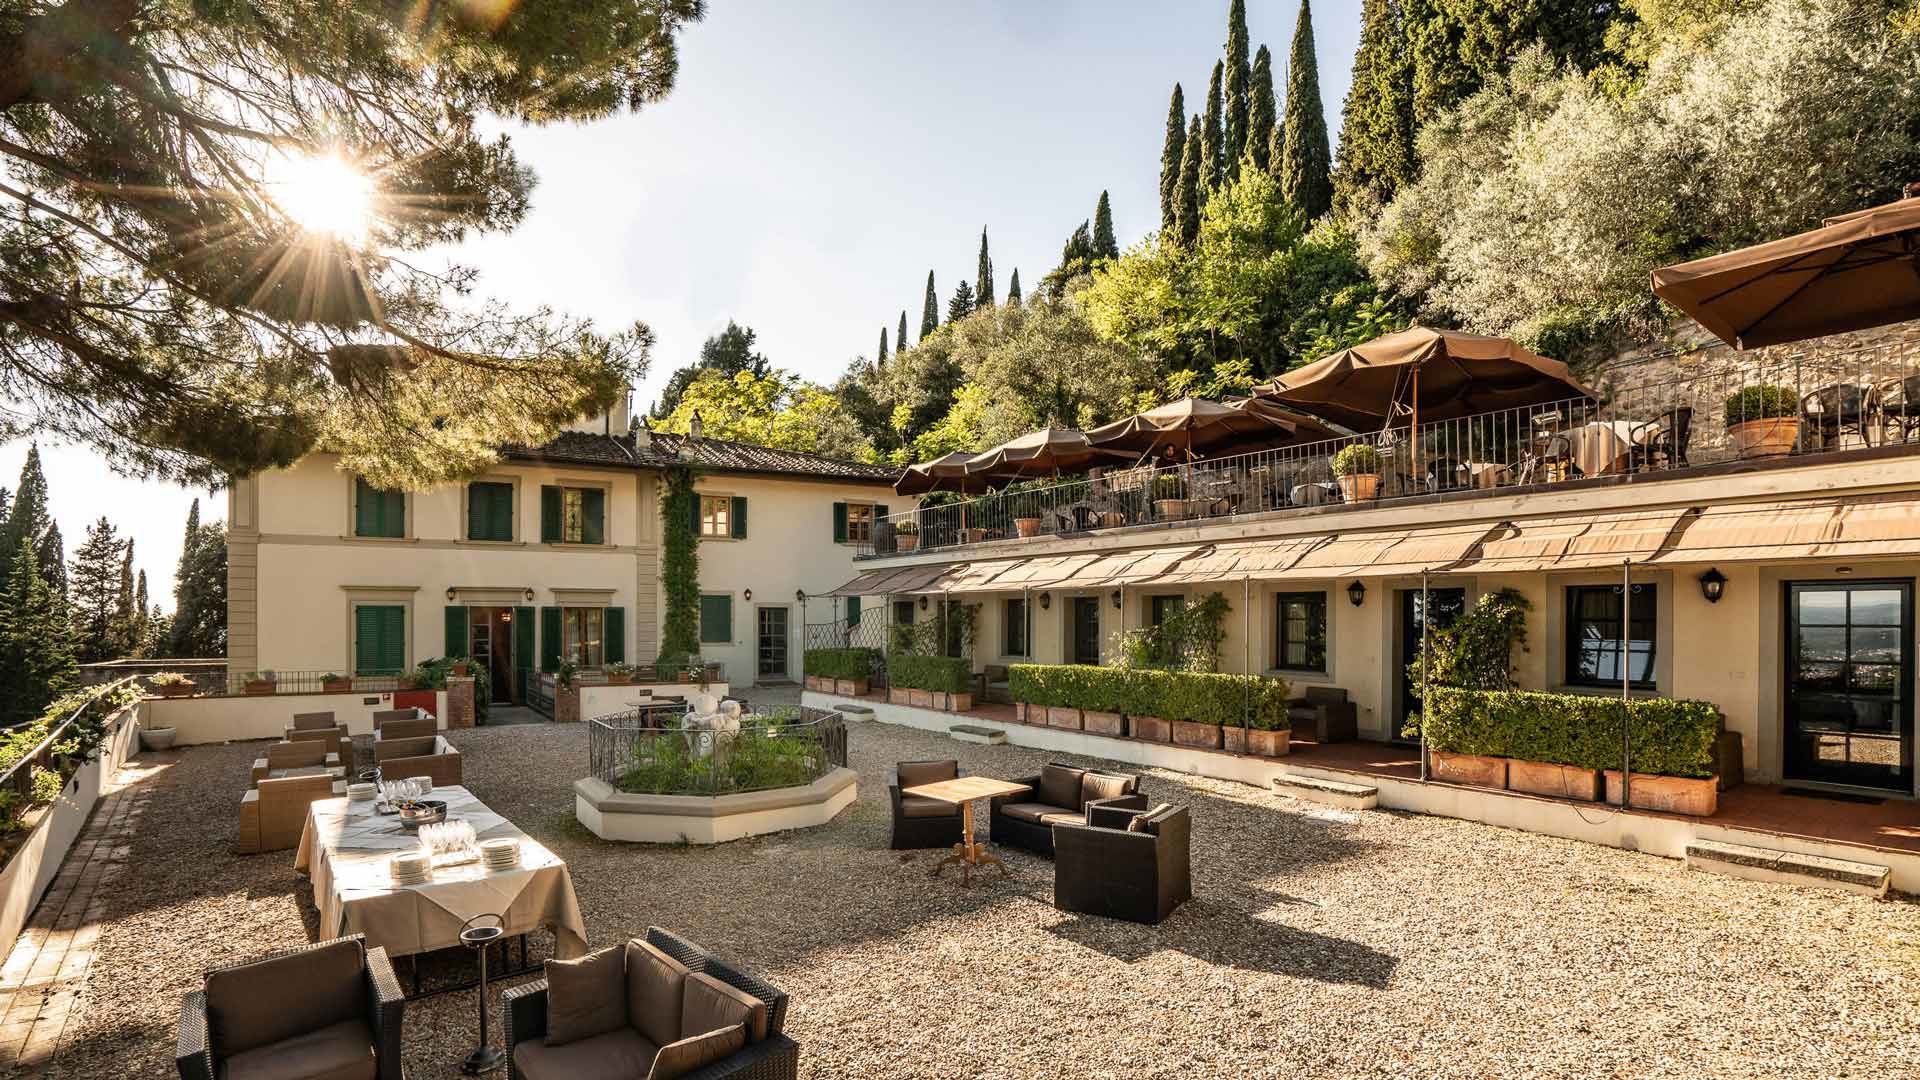 Hôtel Villa Fiesole en Toscane | Site officiel (fhhotelgroup.it)